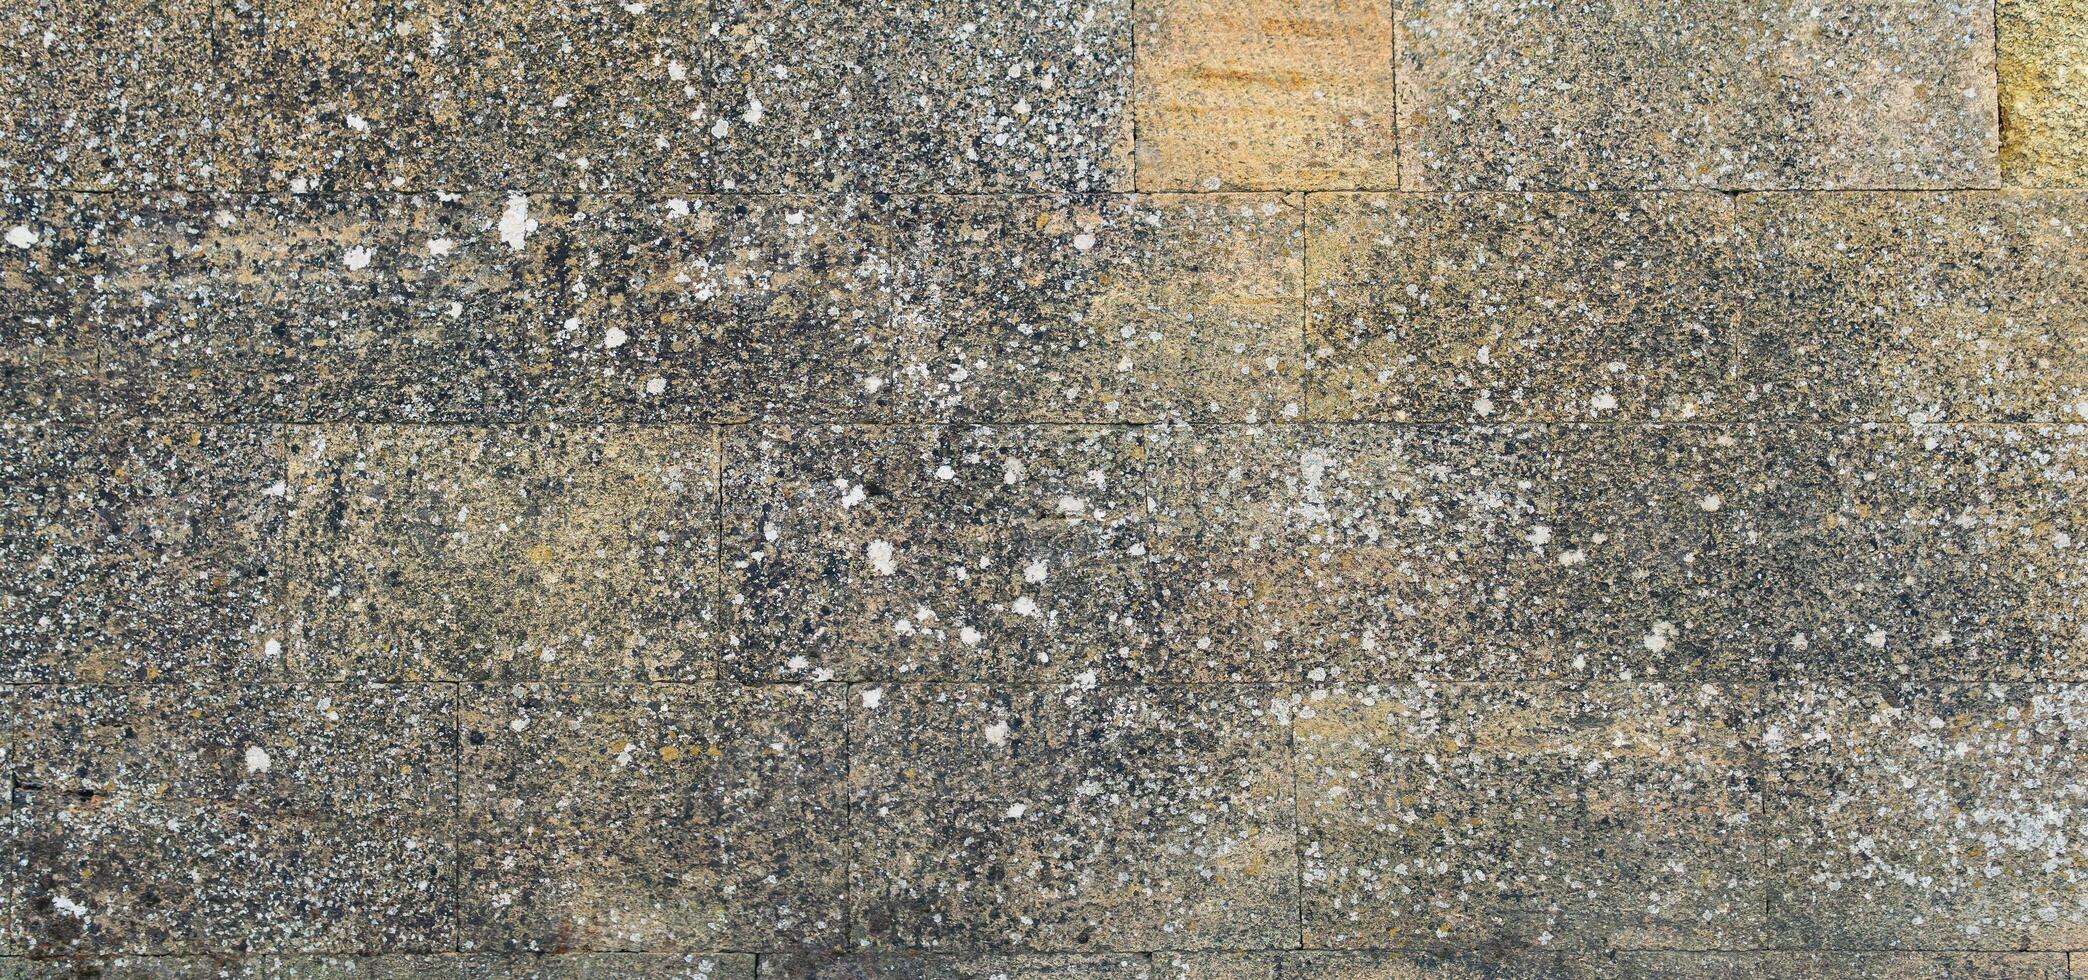 bakgrund, textur - en vägg av även sten block, täckt med lav från gammal ålder foto